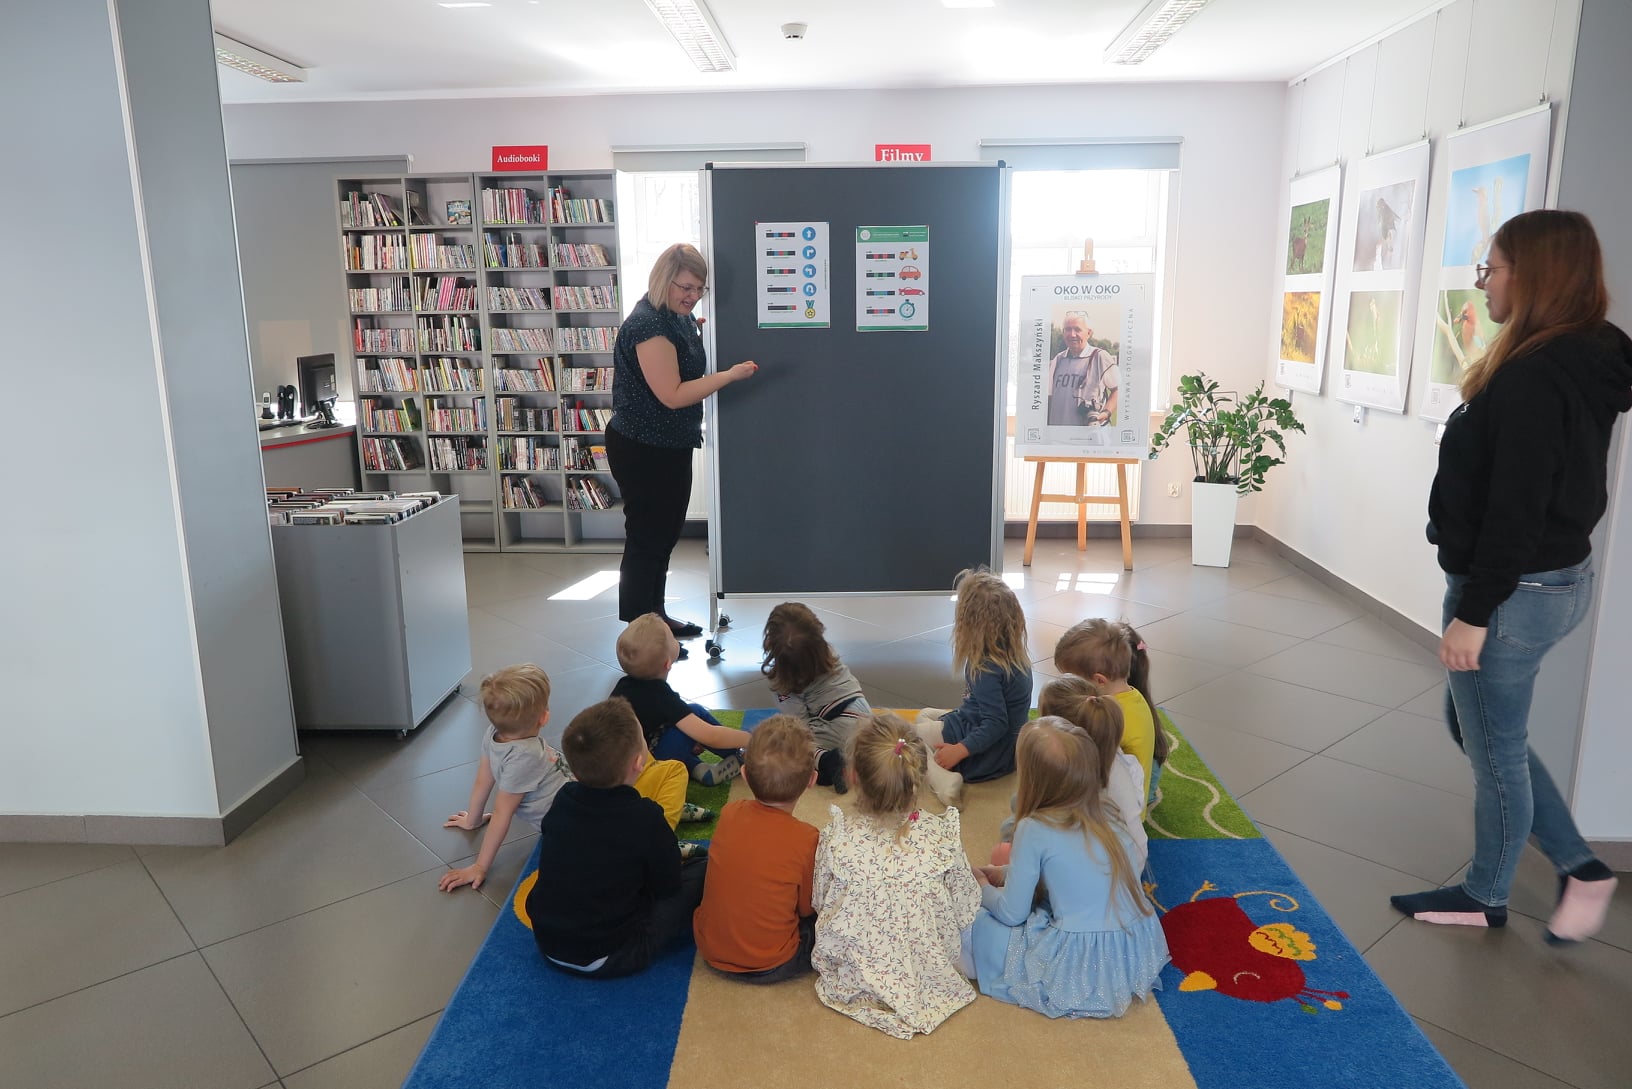 wnętrze mediateki, na dywanie siedzą dzieci, przyglądają się tablicy na której wiszą kody programowania ozobota, obok tablicy stoi bibliotekarka, po prawej stroni zdjęcia stoi opiekunka dzieci